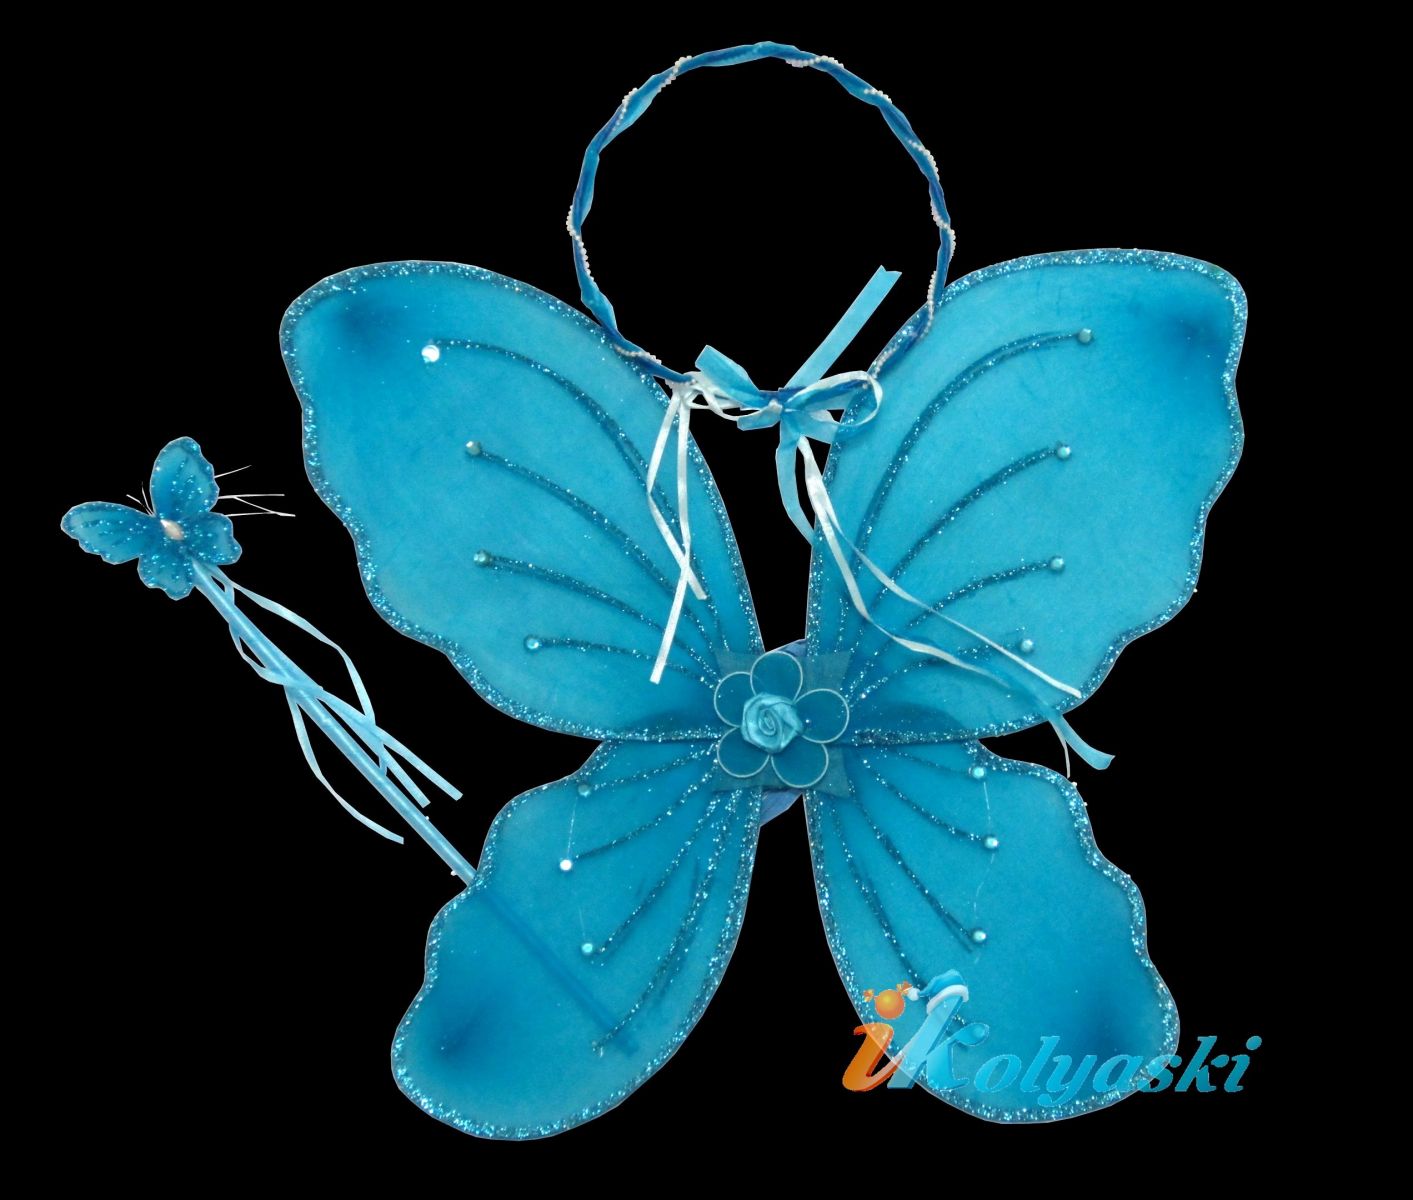 Крылья бабочки, крылья волшебной феи бабочек, крылья стрекозы, крылья голубого мотылька, урылья феи Винкс. Карнавальный набор: крылья двойные, ободок, волшебная палочка (Winx), размер крыльев 47х38 см, цвет ГОЛУБОЙ, артикул Е91191, фирма Snowmen/ Крылья бабочки, крылья волшебной феи бабочек, крылья стрекозы, крылья голубого мотылька, голубые крылья бабочки, крылья winx, крылья винкс, купить крылья стрекозы, куплю крылья феи винкс, крылья винкс купить